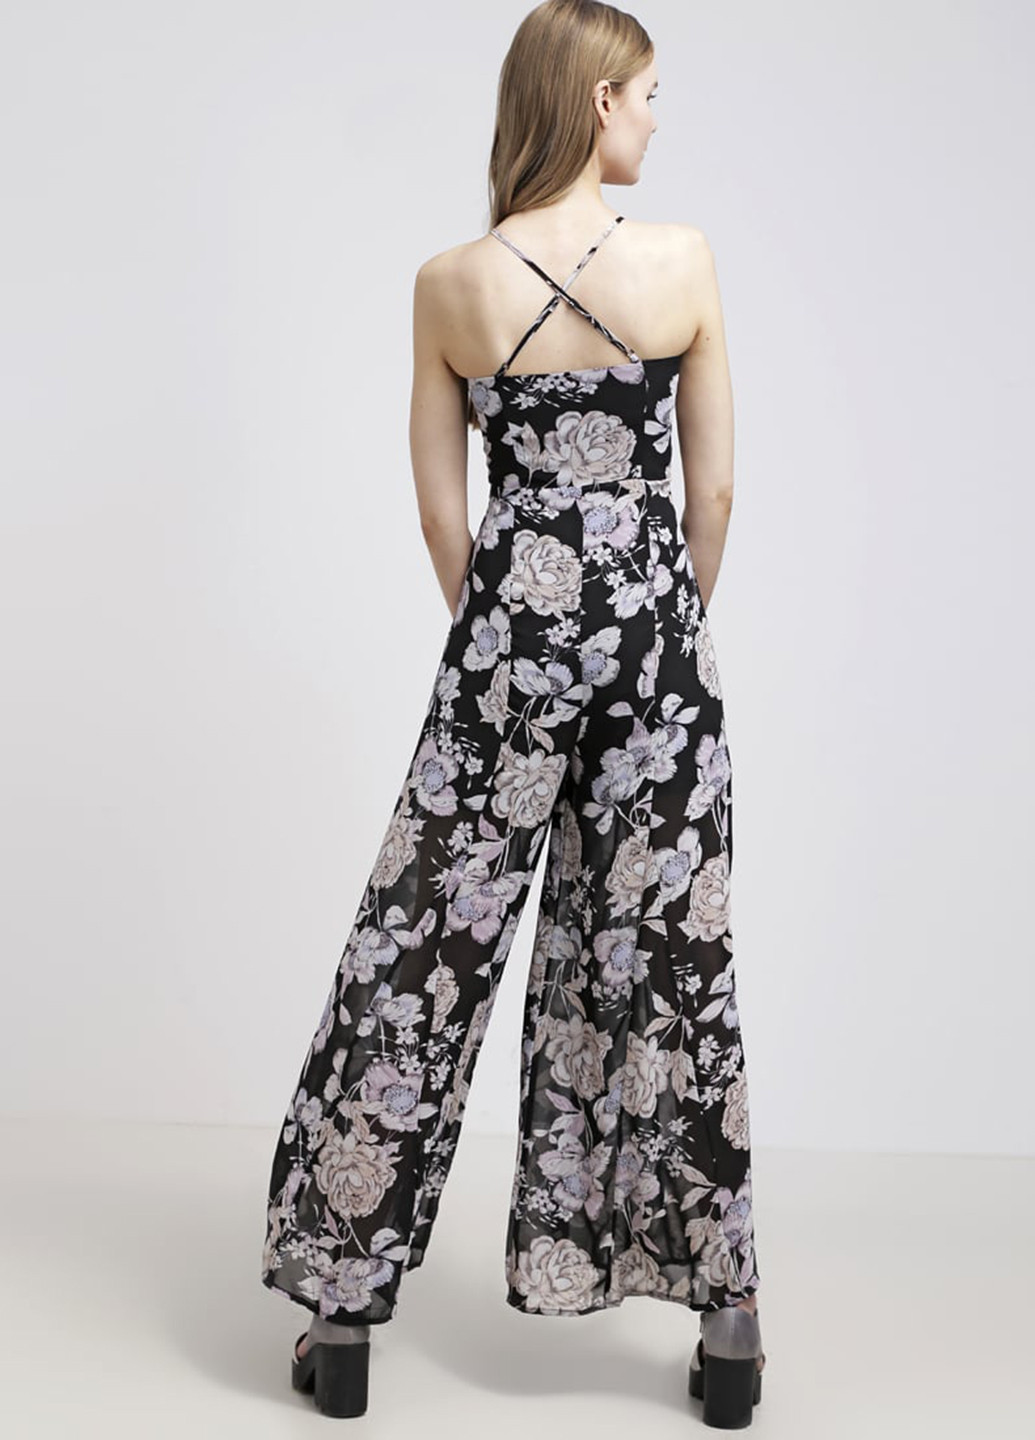 Комбинезон Glamorous комбинезон-брюки цветочный чёрный кэжуал полиэстер